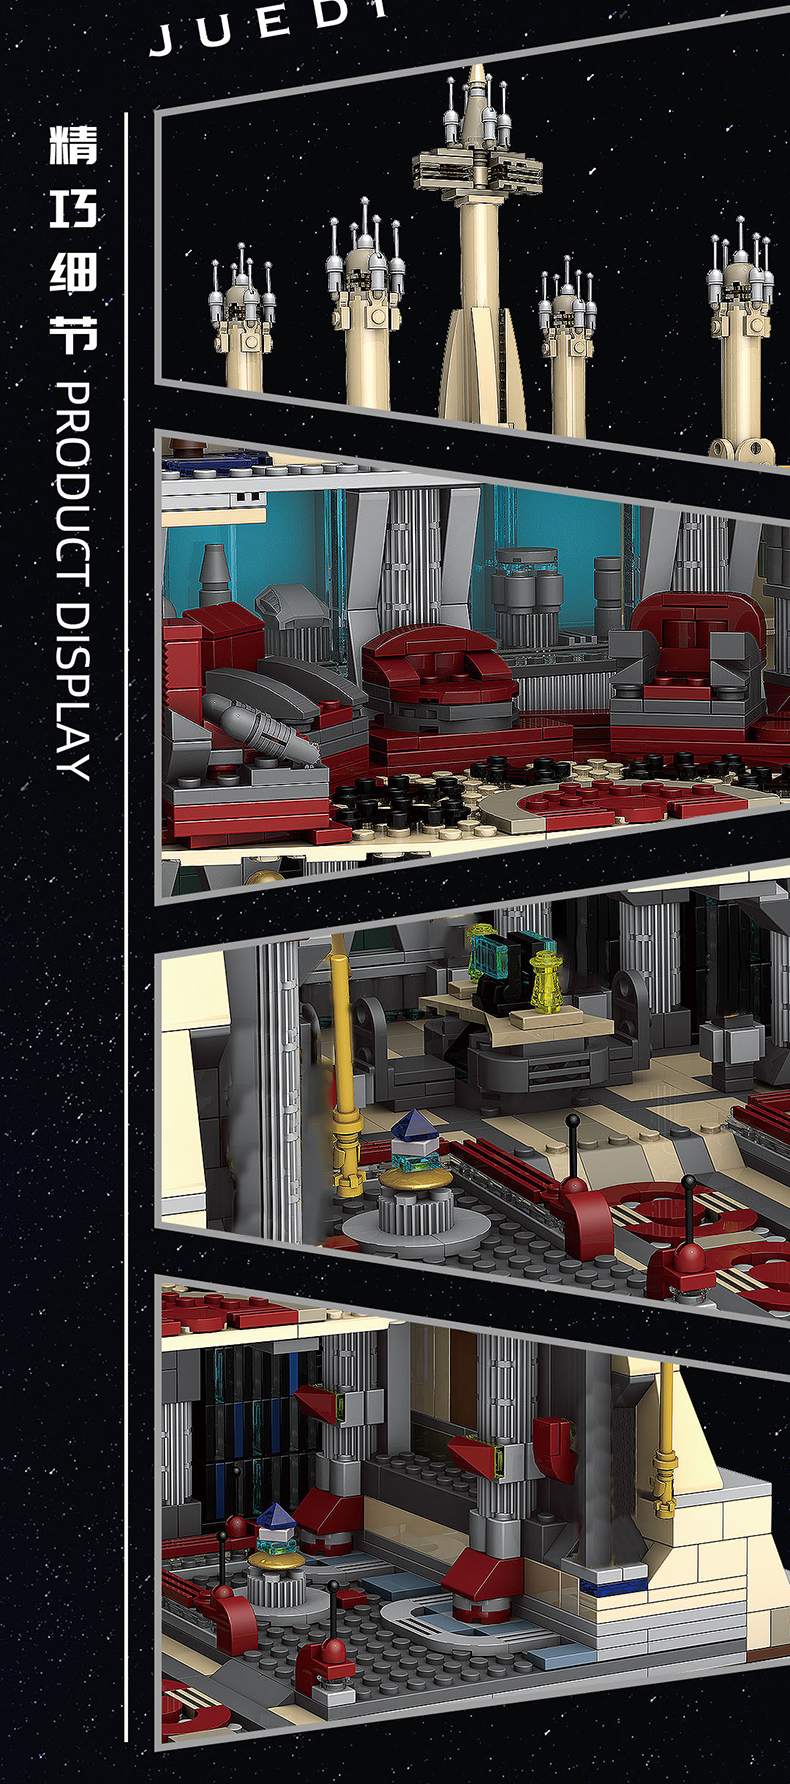 MOULD KING 21036 Temple Jedi série Star Wars blocs de construction ensemble de jouets